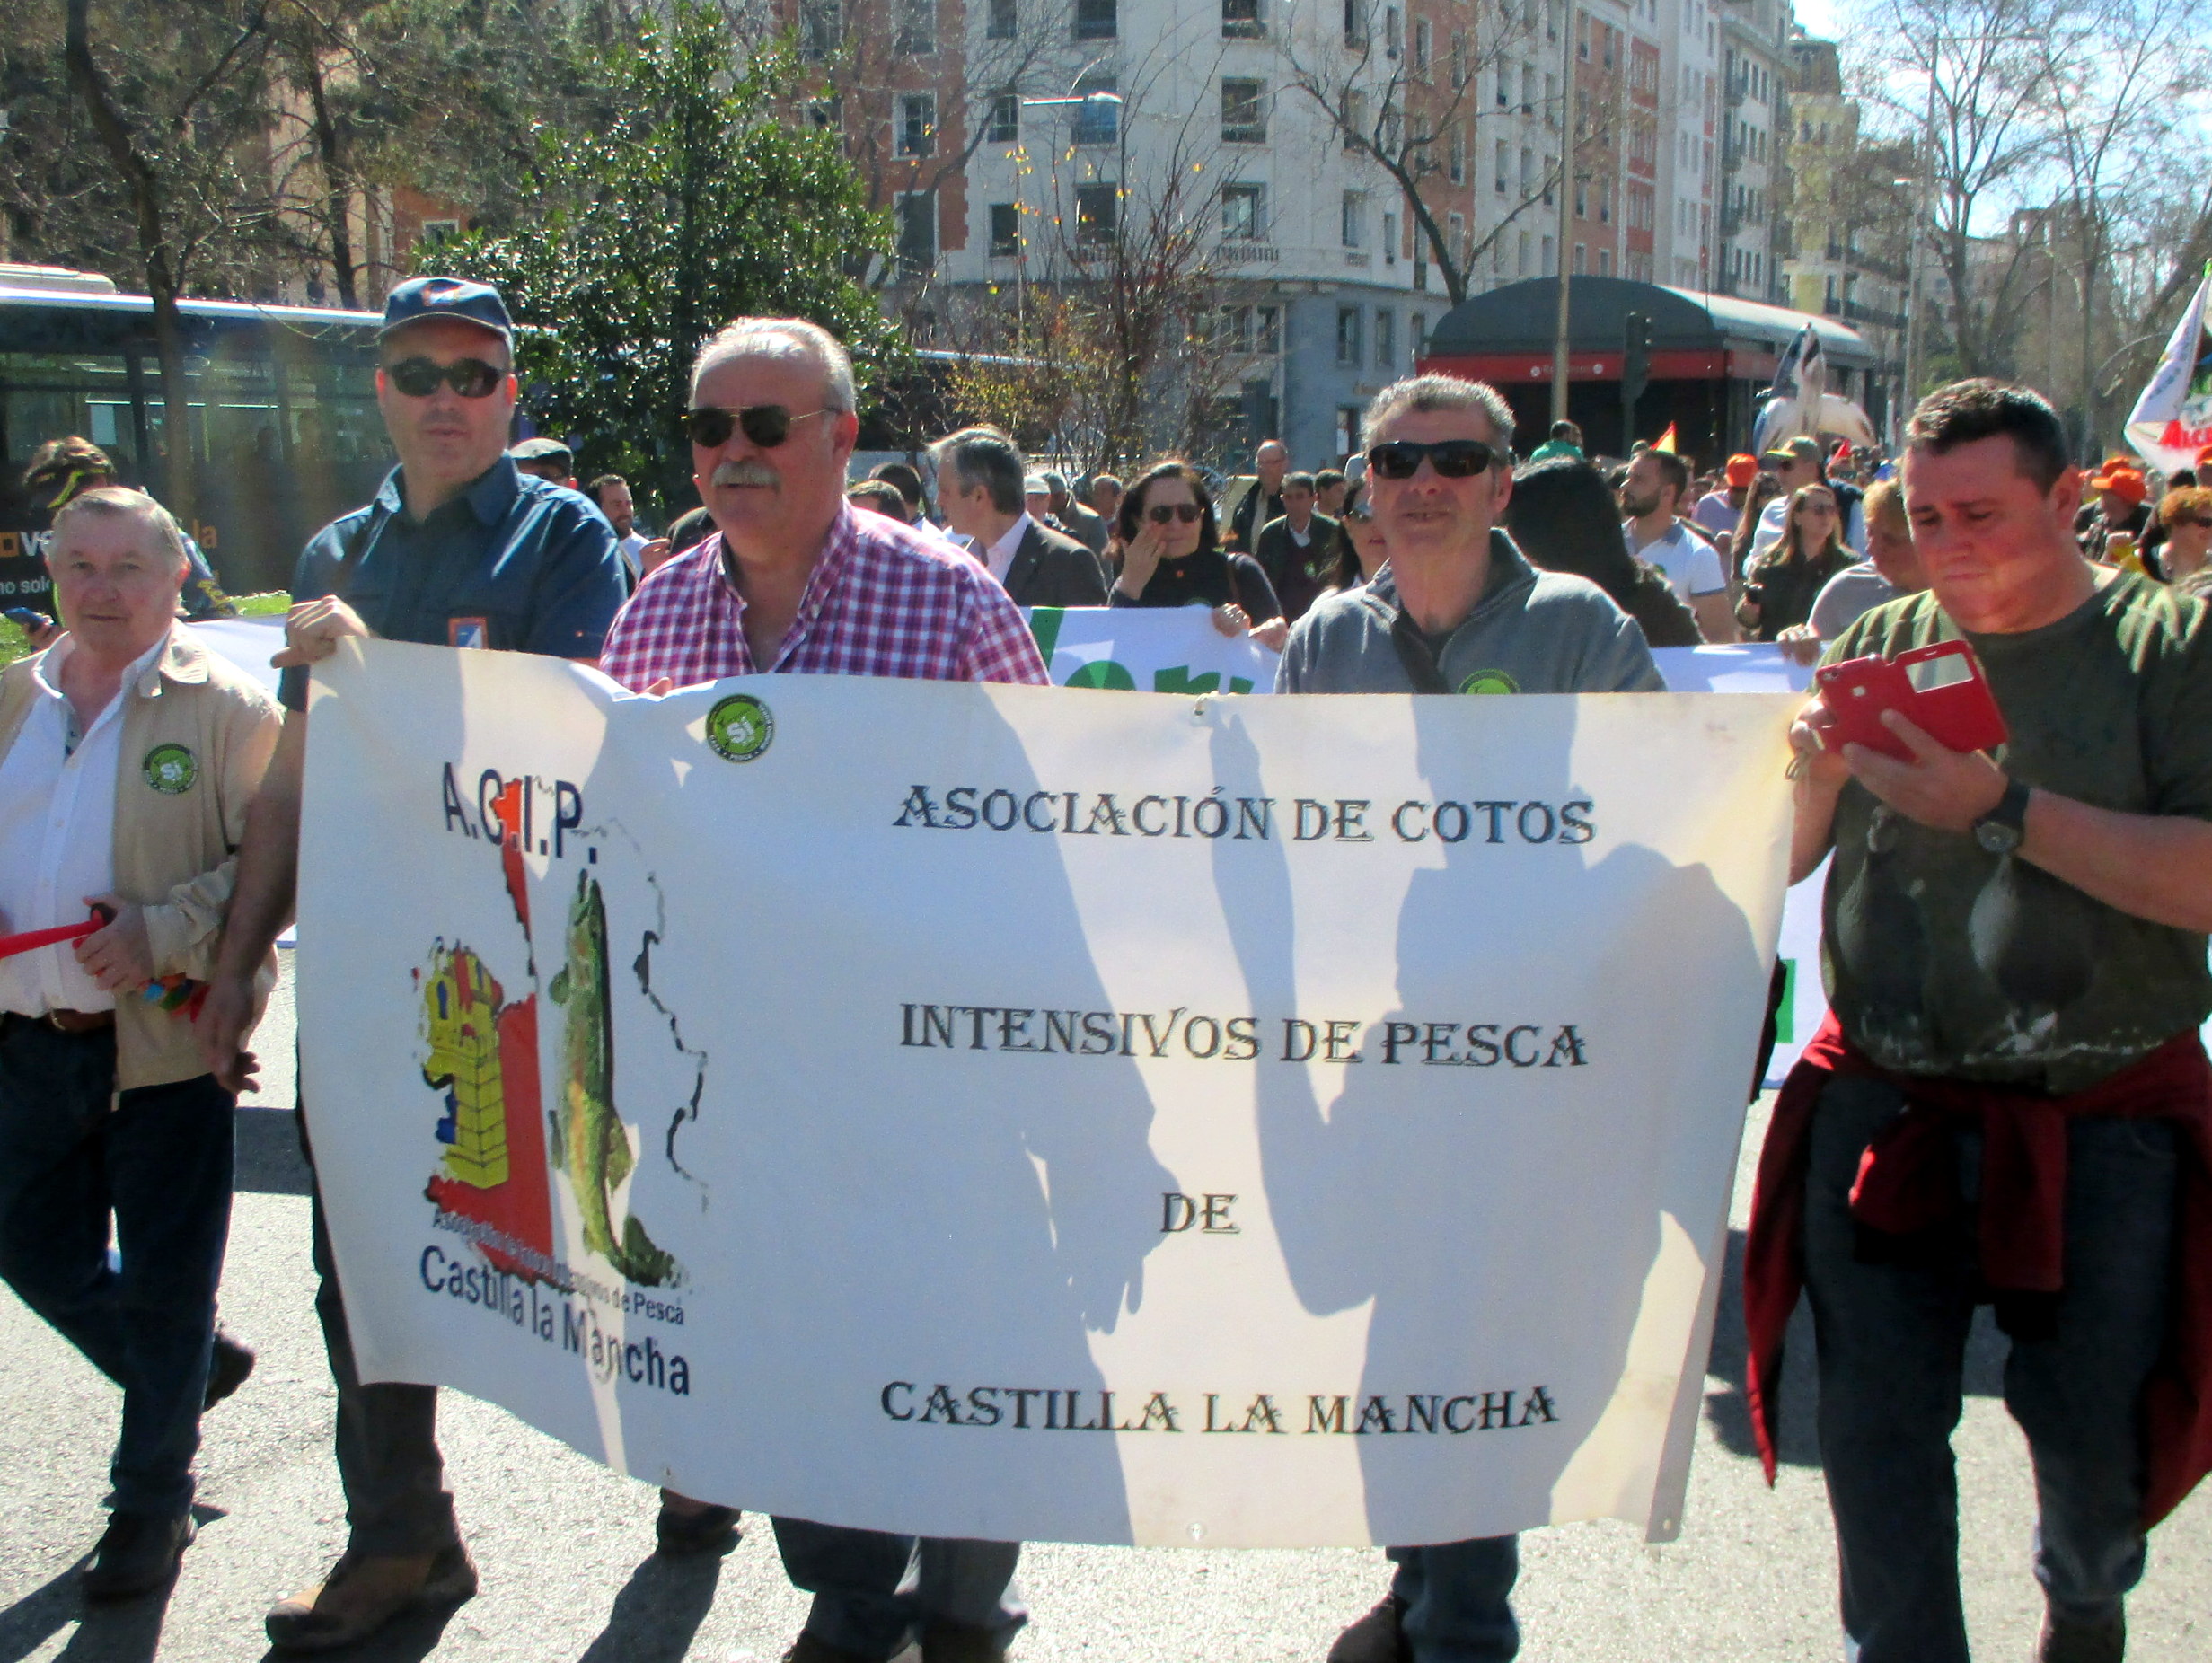 Asociación de Cotos Intensivos de Pesca de Castilla La Mancha